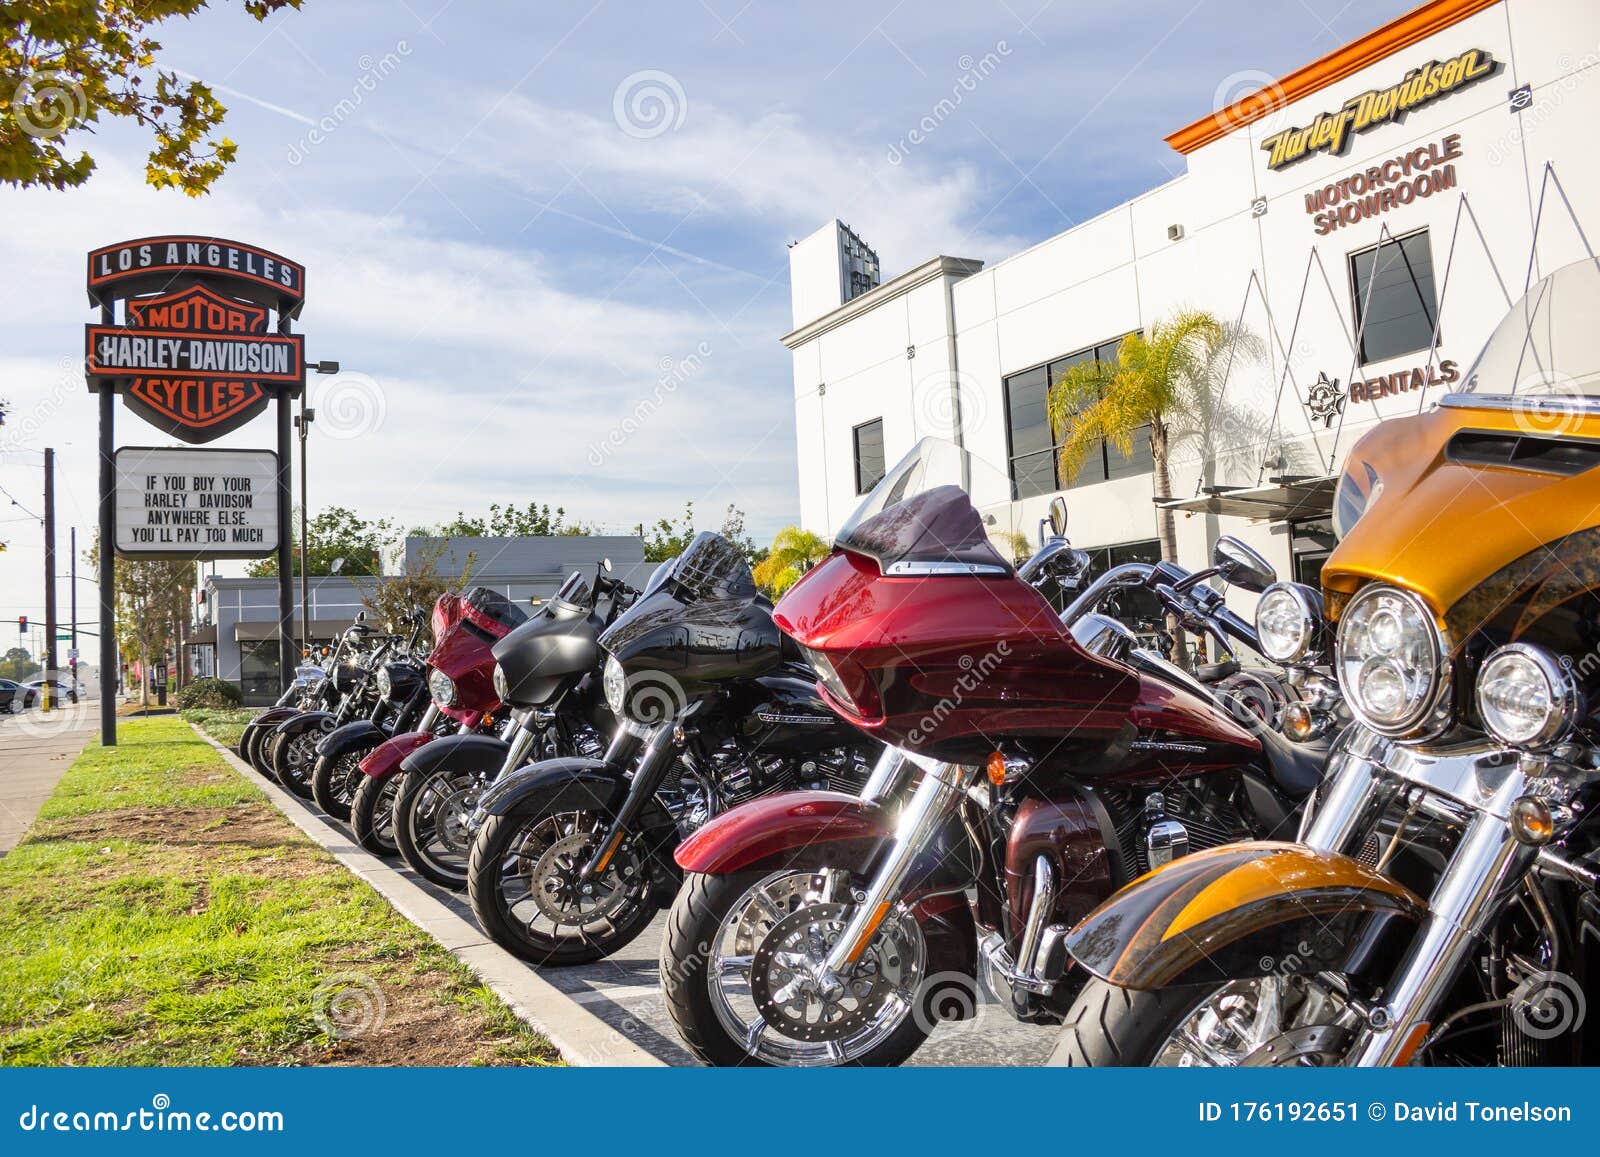 Harley Davidson Motorcycle Dealer Near Me Promotion Off61